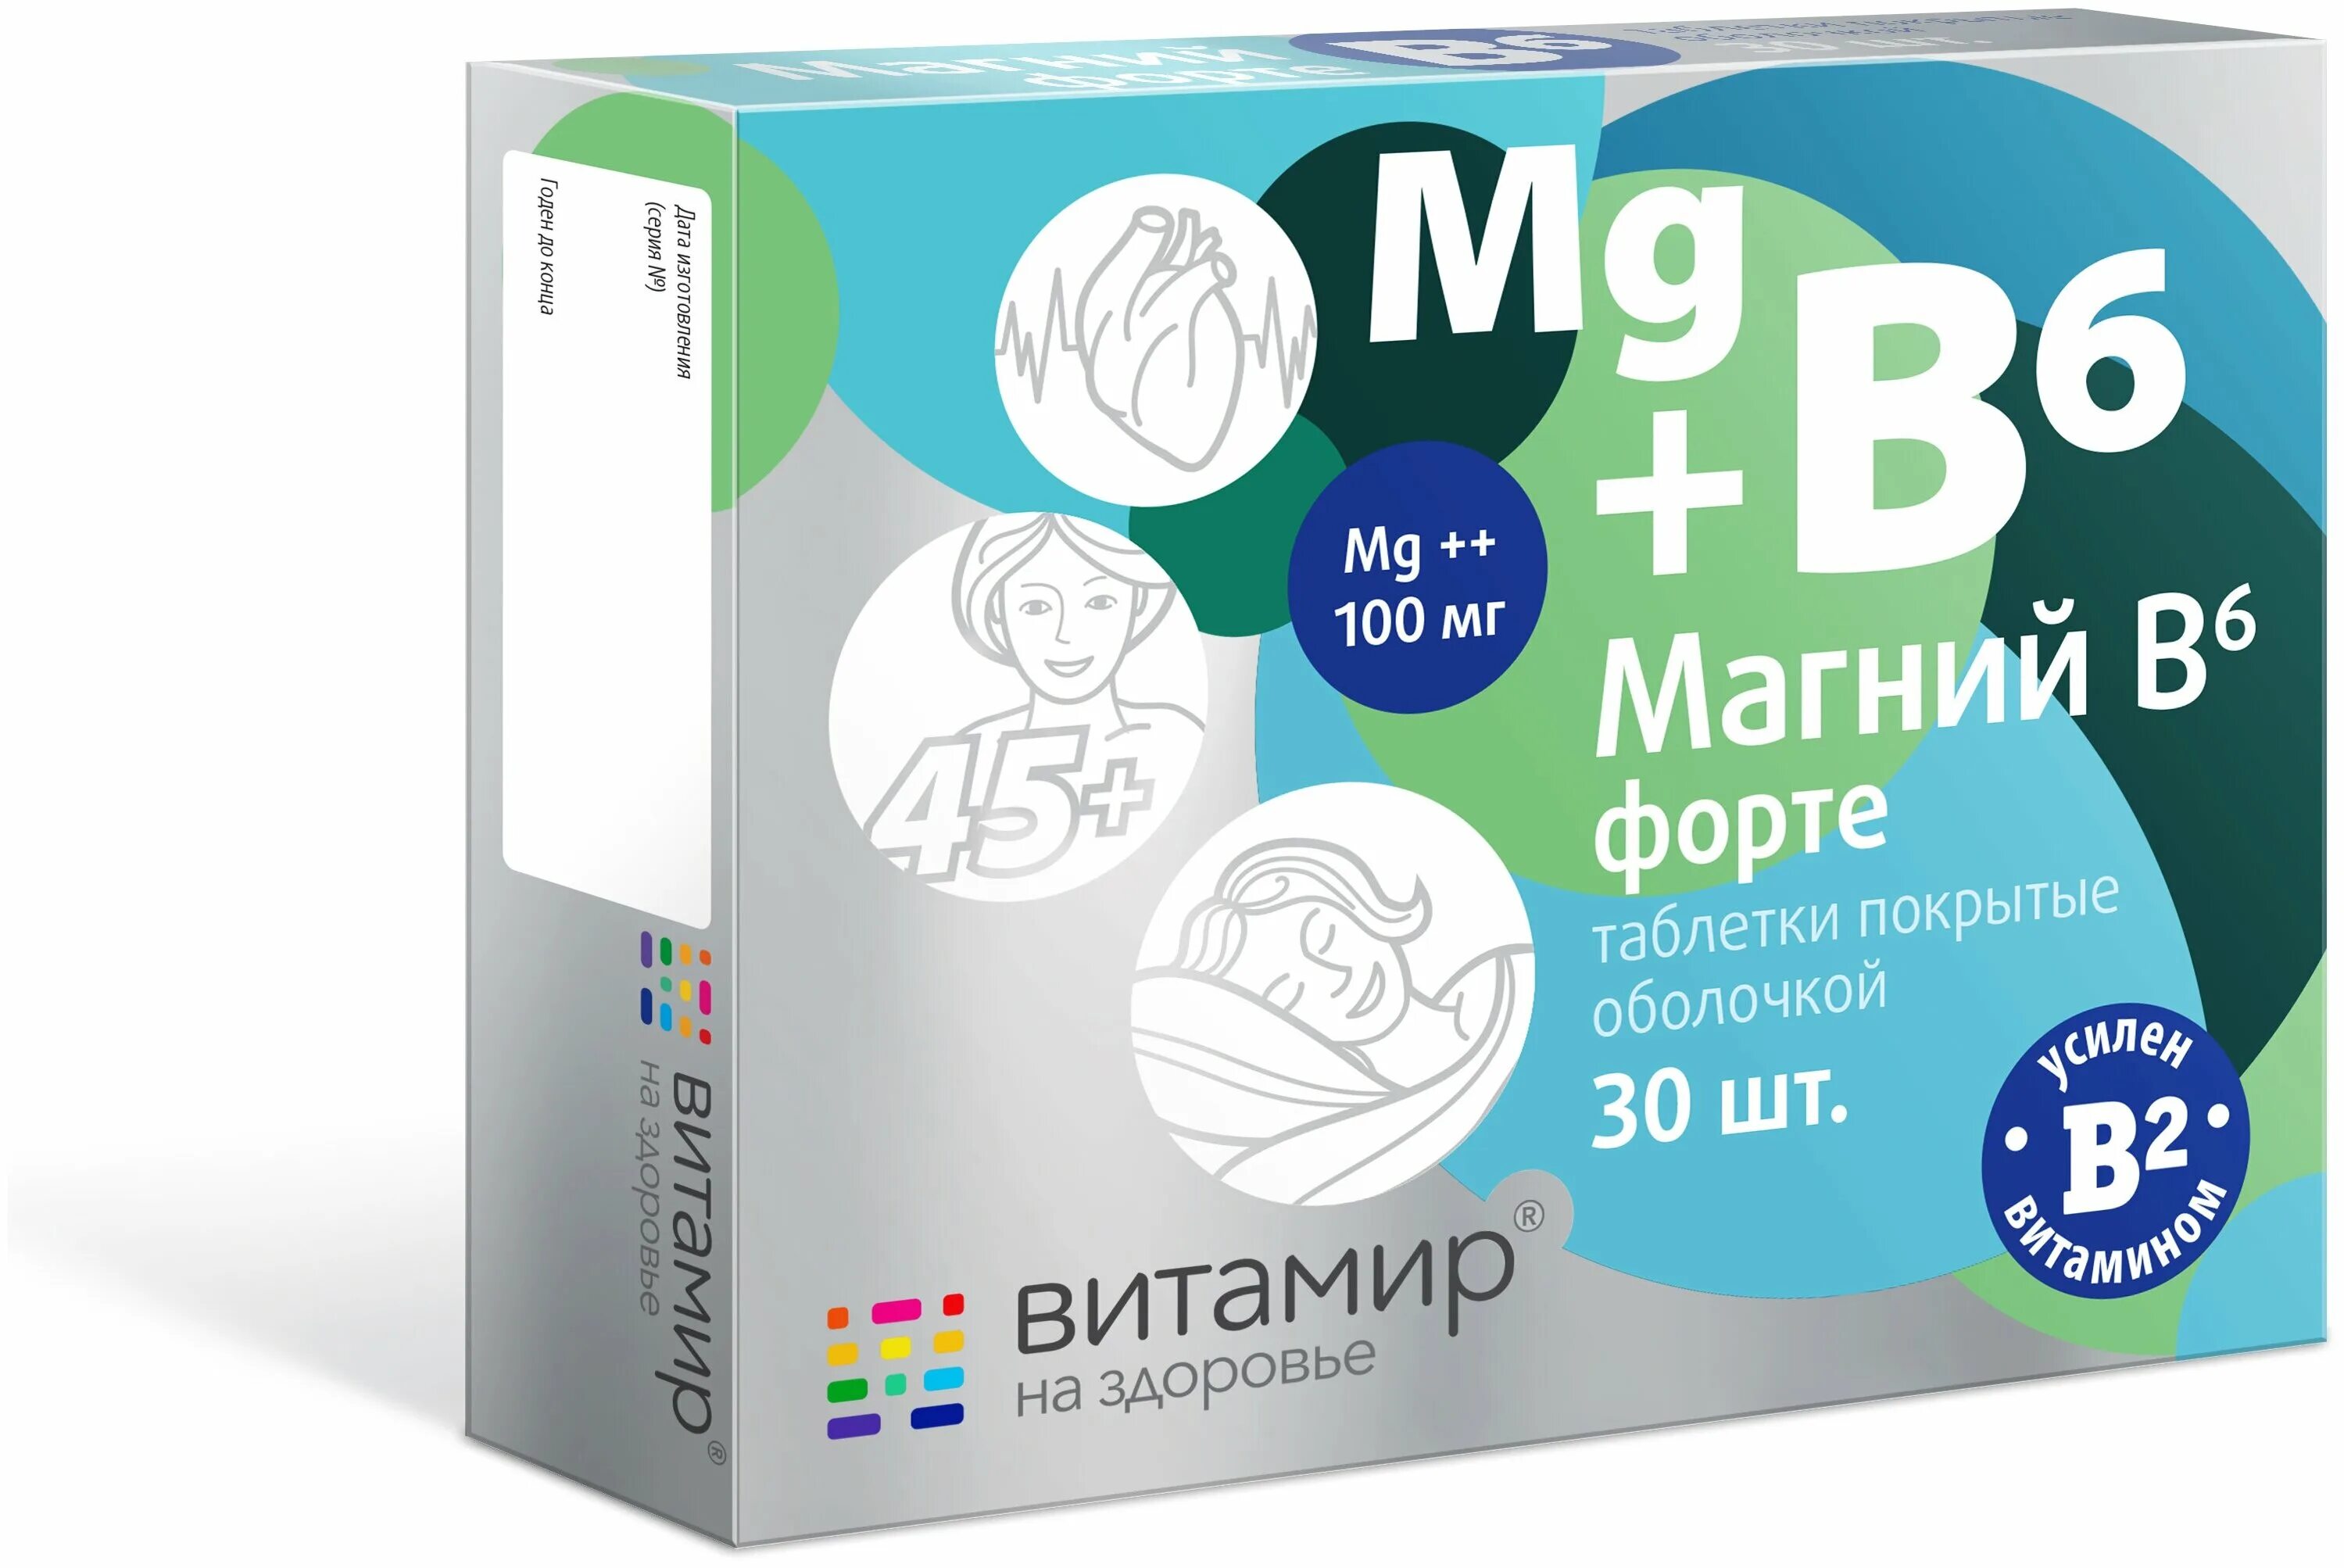 Лекарства магний б. Магний б6 форте. Магний б6 форте витамир. Магний в6 форте Консумед. Магний b6 форте 100мг.